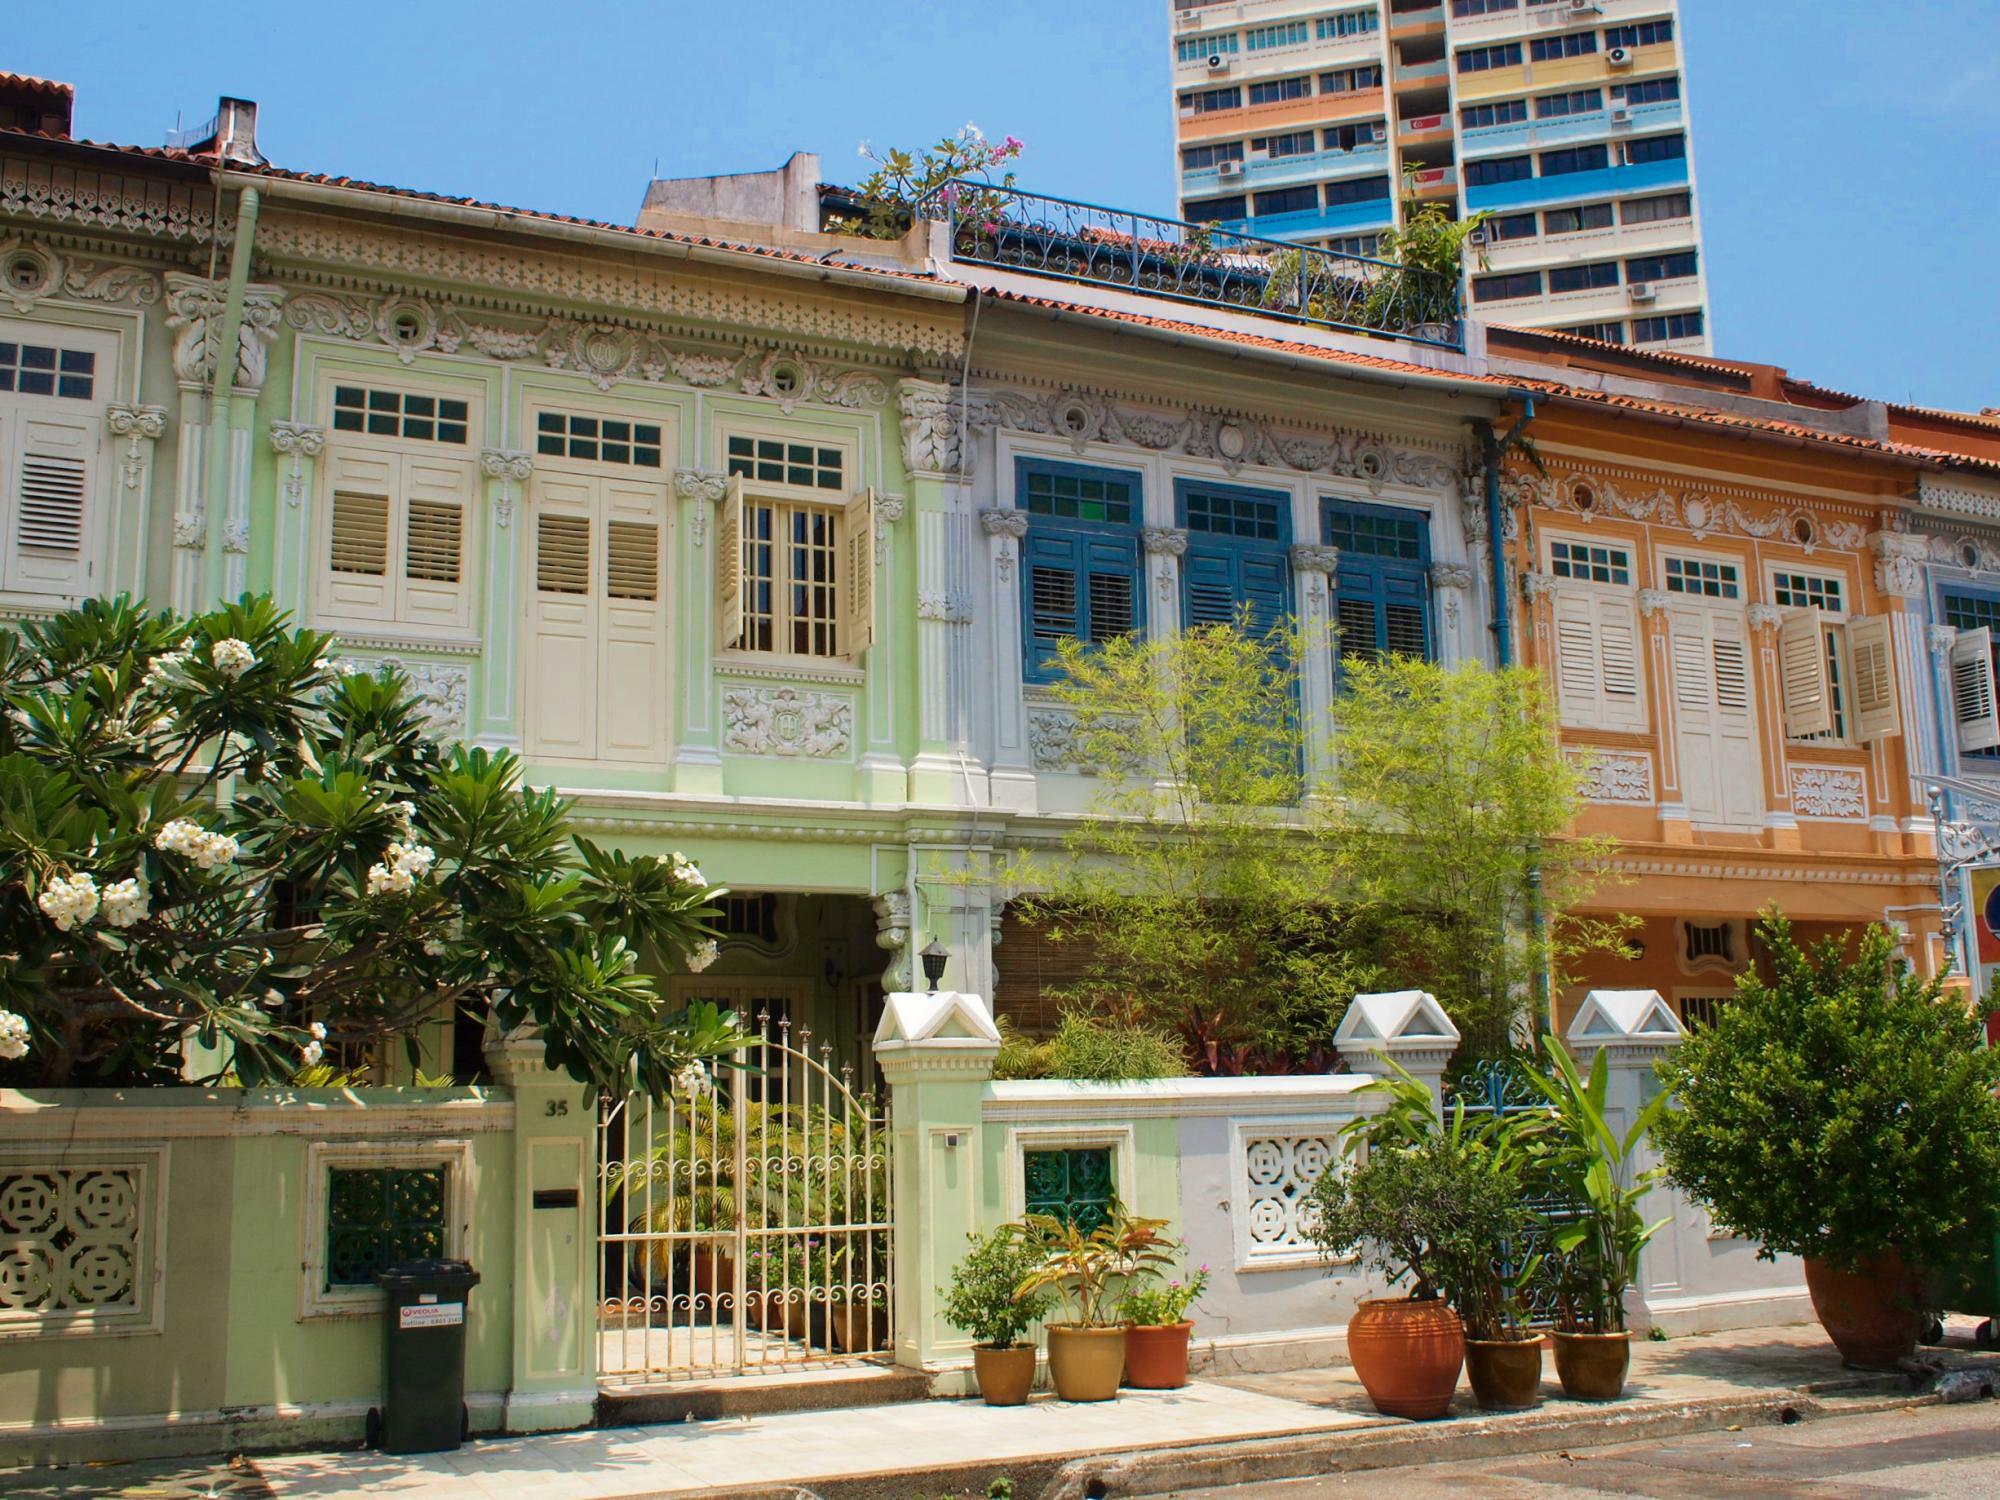 プラナカン様式の建物が並ぶシンガポールの街